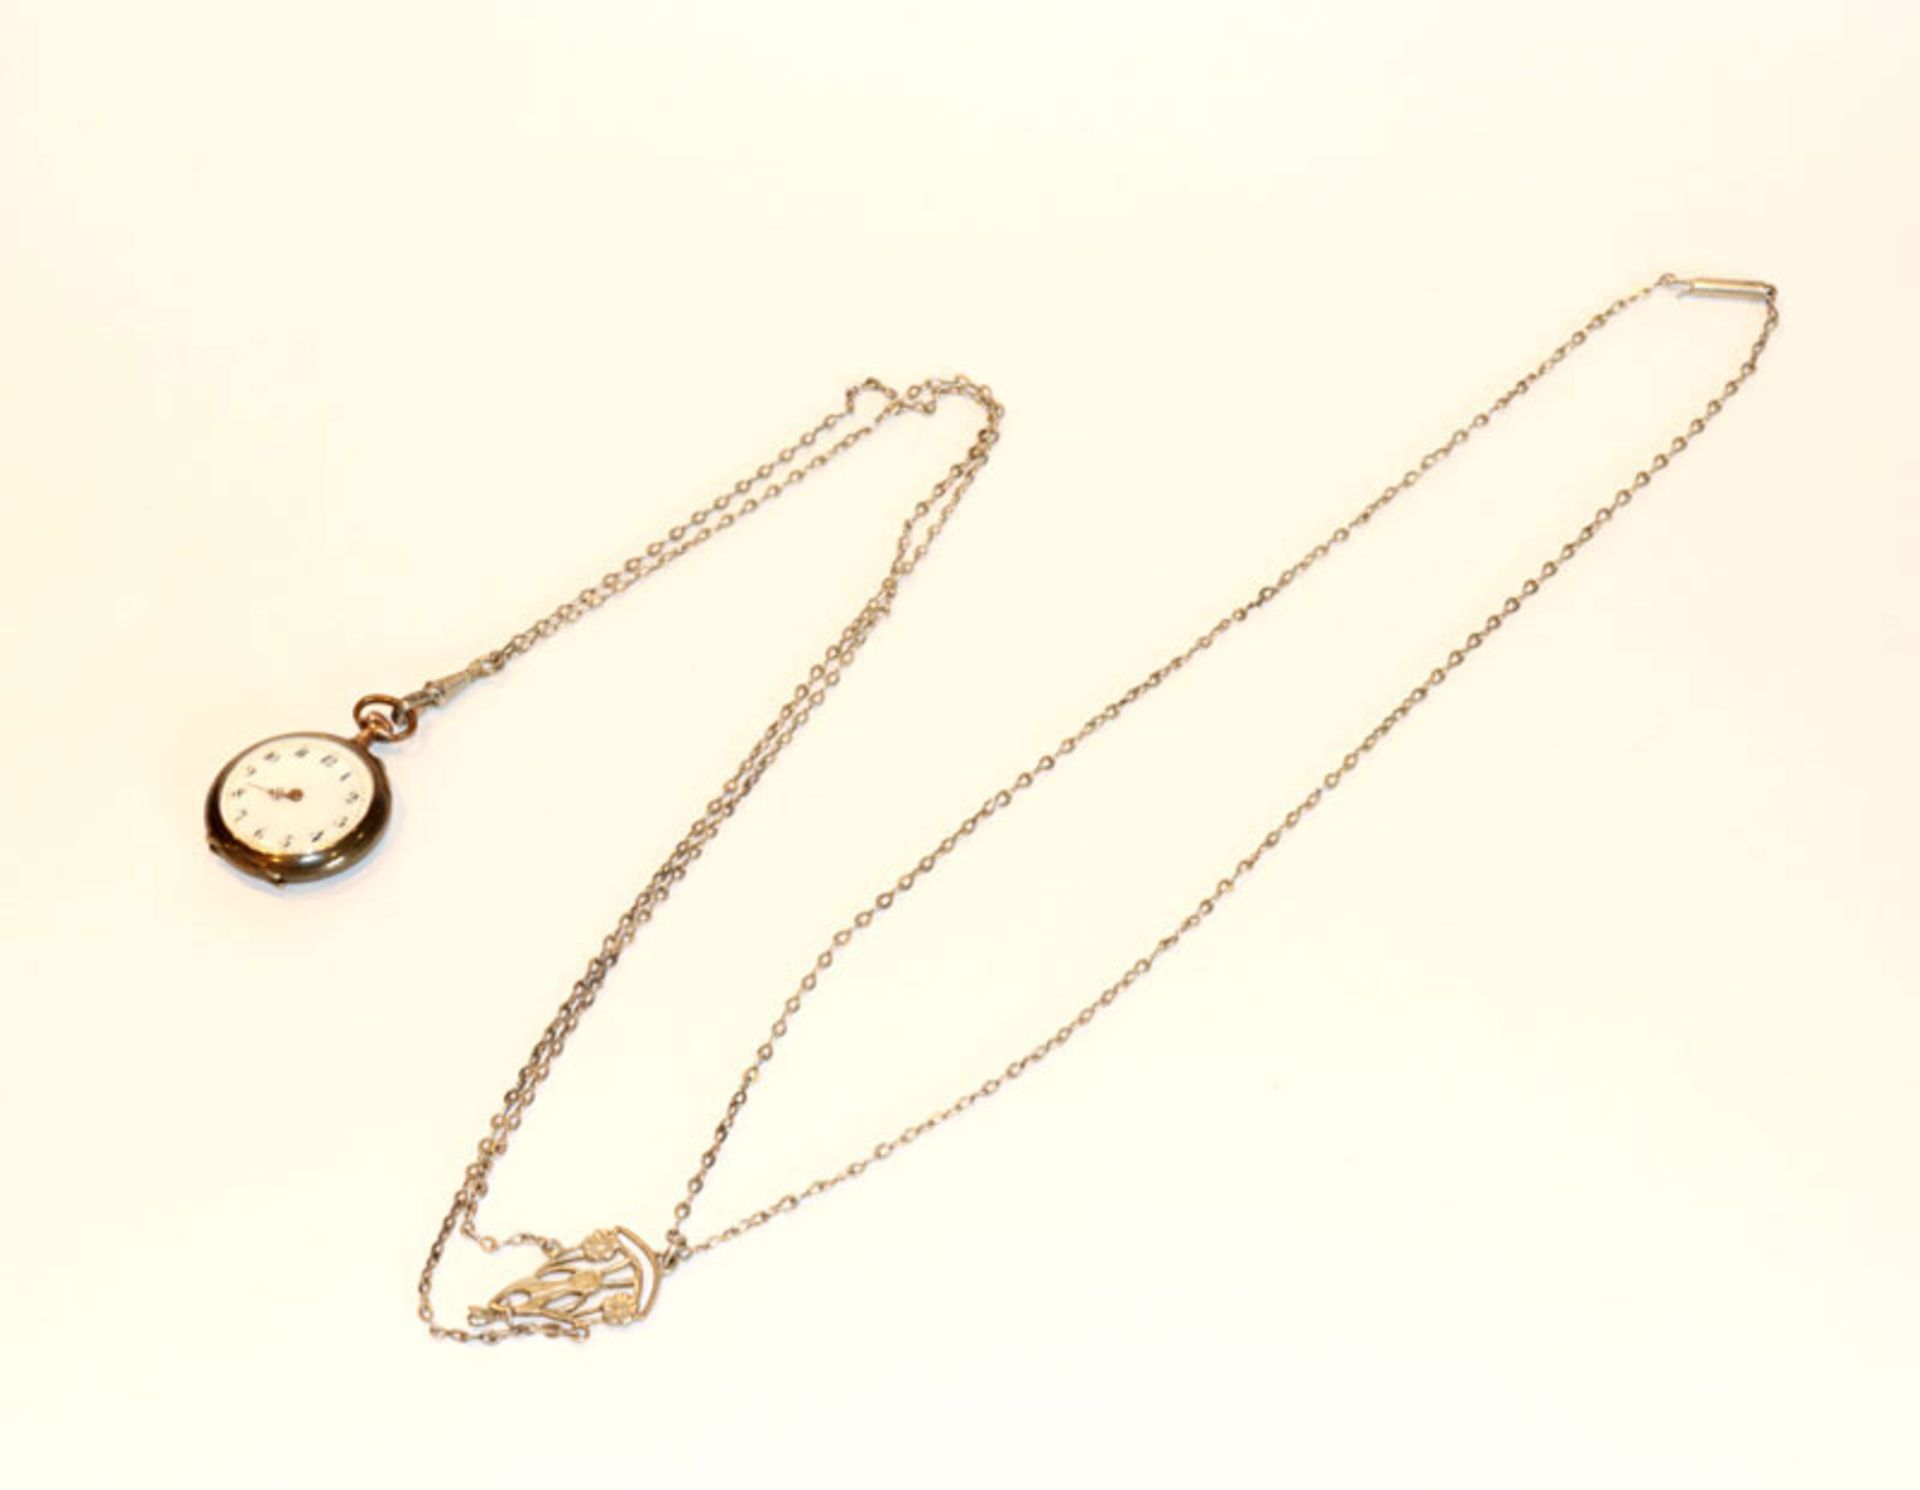 Silber Taschenuhr, intakt, ein Zeiger fehlt, D 3 cm, an versilberter Kette, gesamte L 122 cm